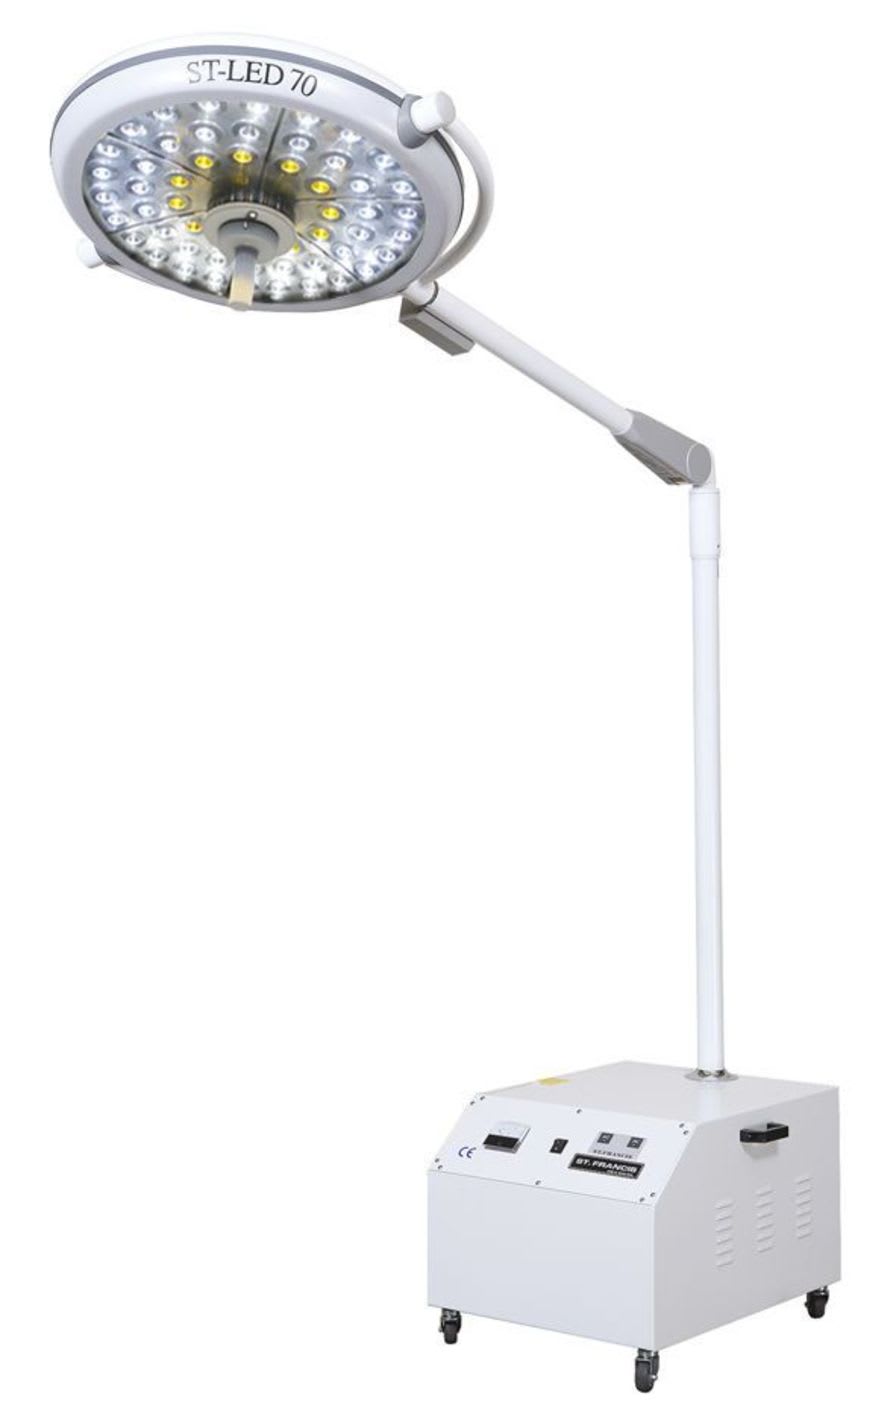 LED surgical light / mobile / 1-arm ST-LED70E St. Francis Medical Equipment